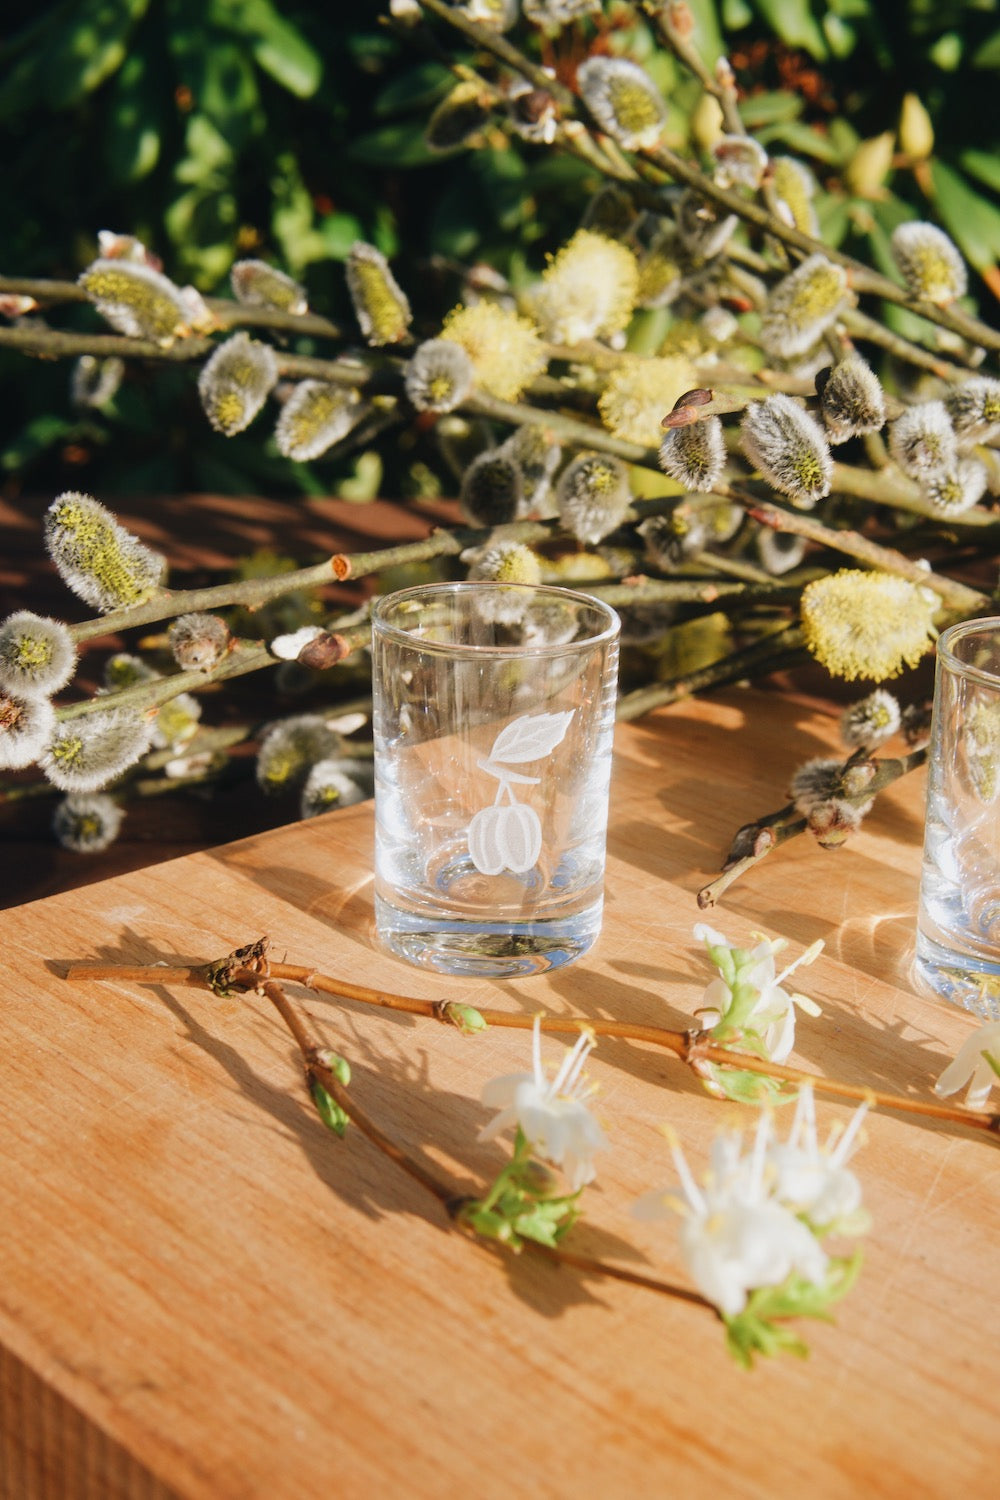 Skleněná štamprle Ateliér Žampach s pískovaným motivem švestky na dřevěném podnose s jarními květinami